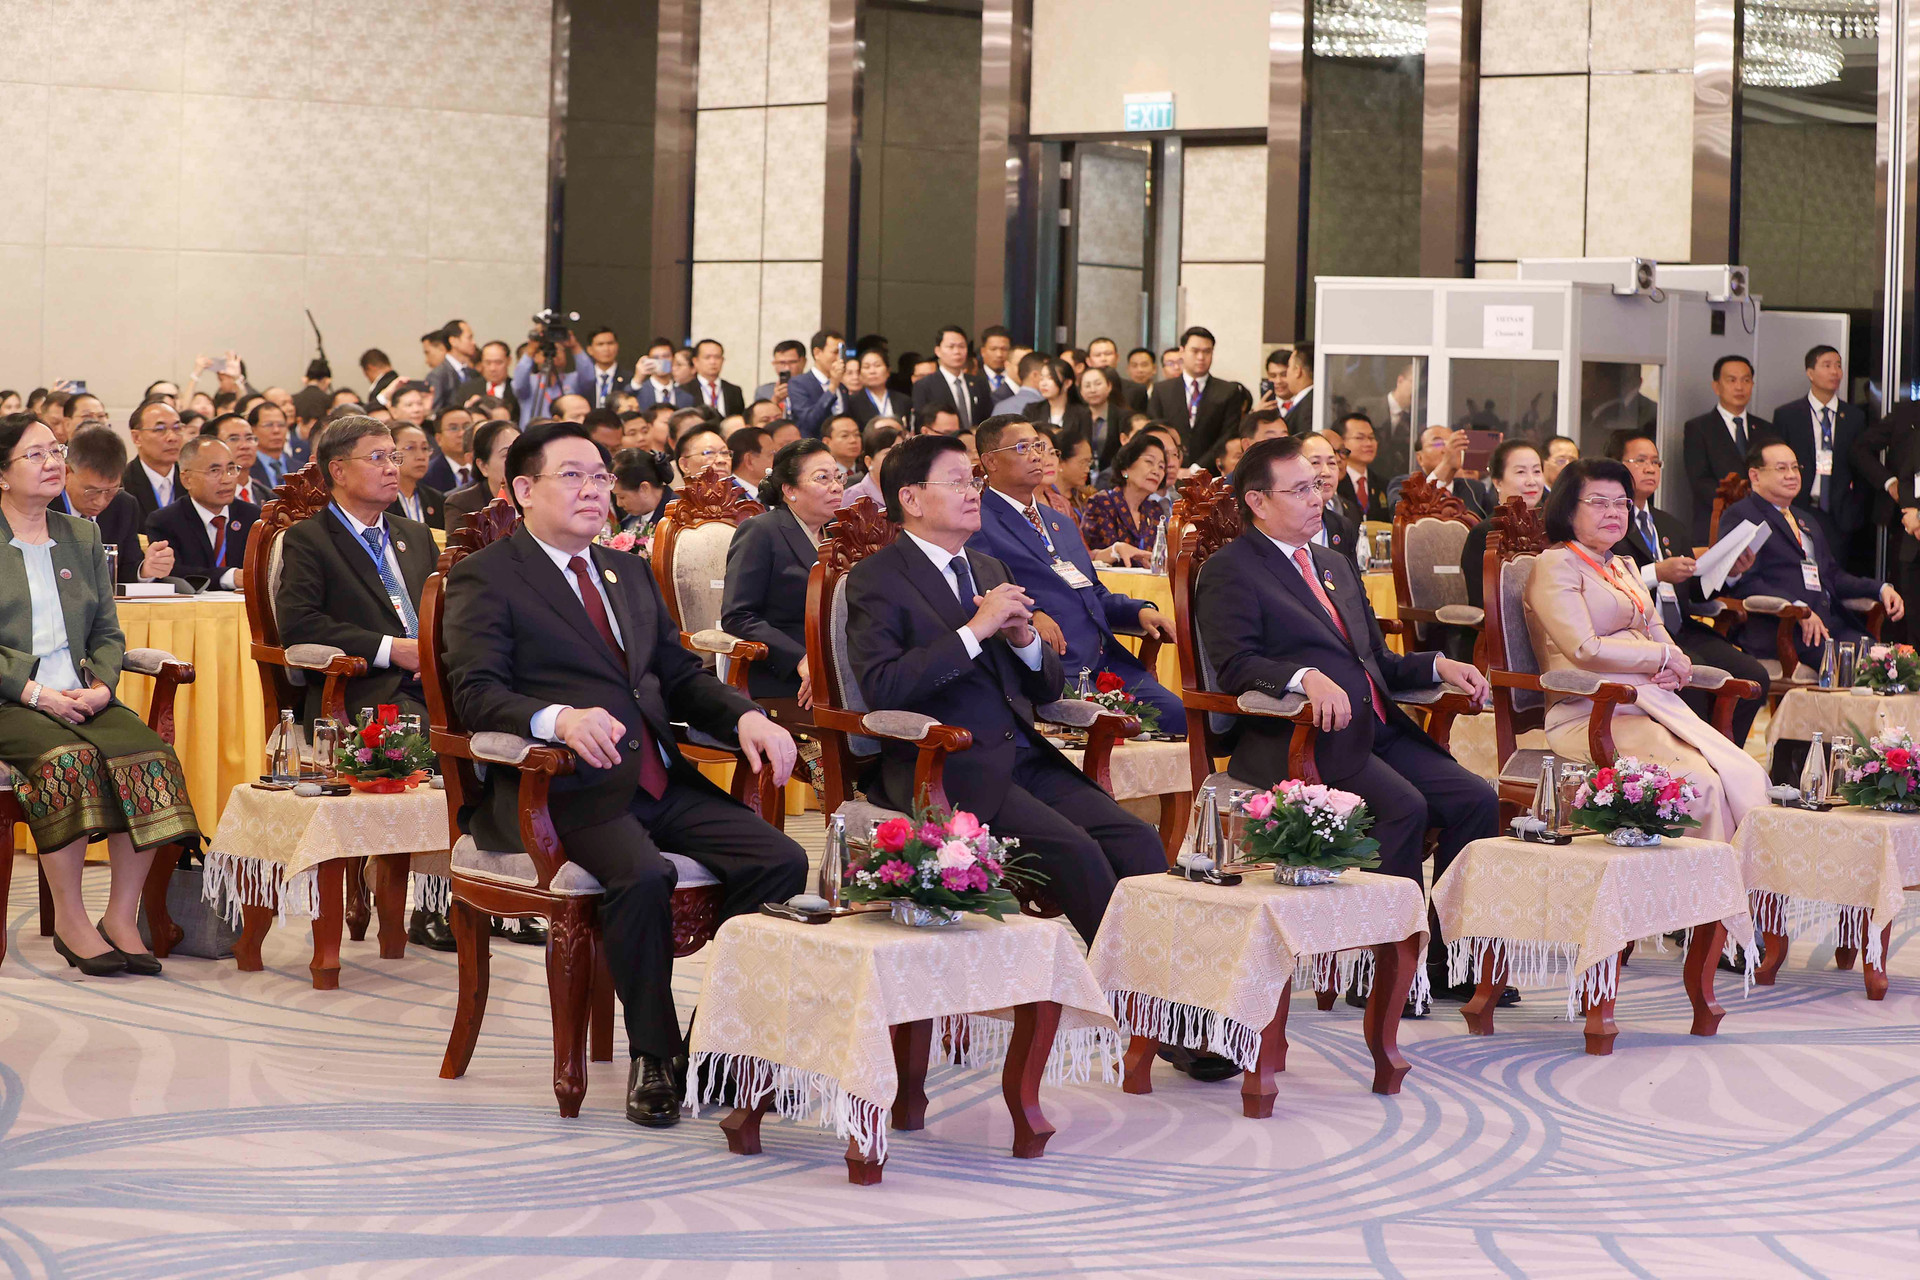 Chủ tịch Quốc hội Vương Đình Huệ dự khai mạc Hội nghị cấp cao Quốc hội 3 nước Campuchia - Lào - Việt Nam lần thứ nhất -0